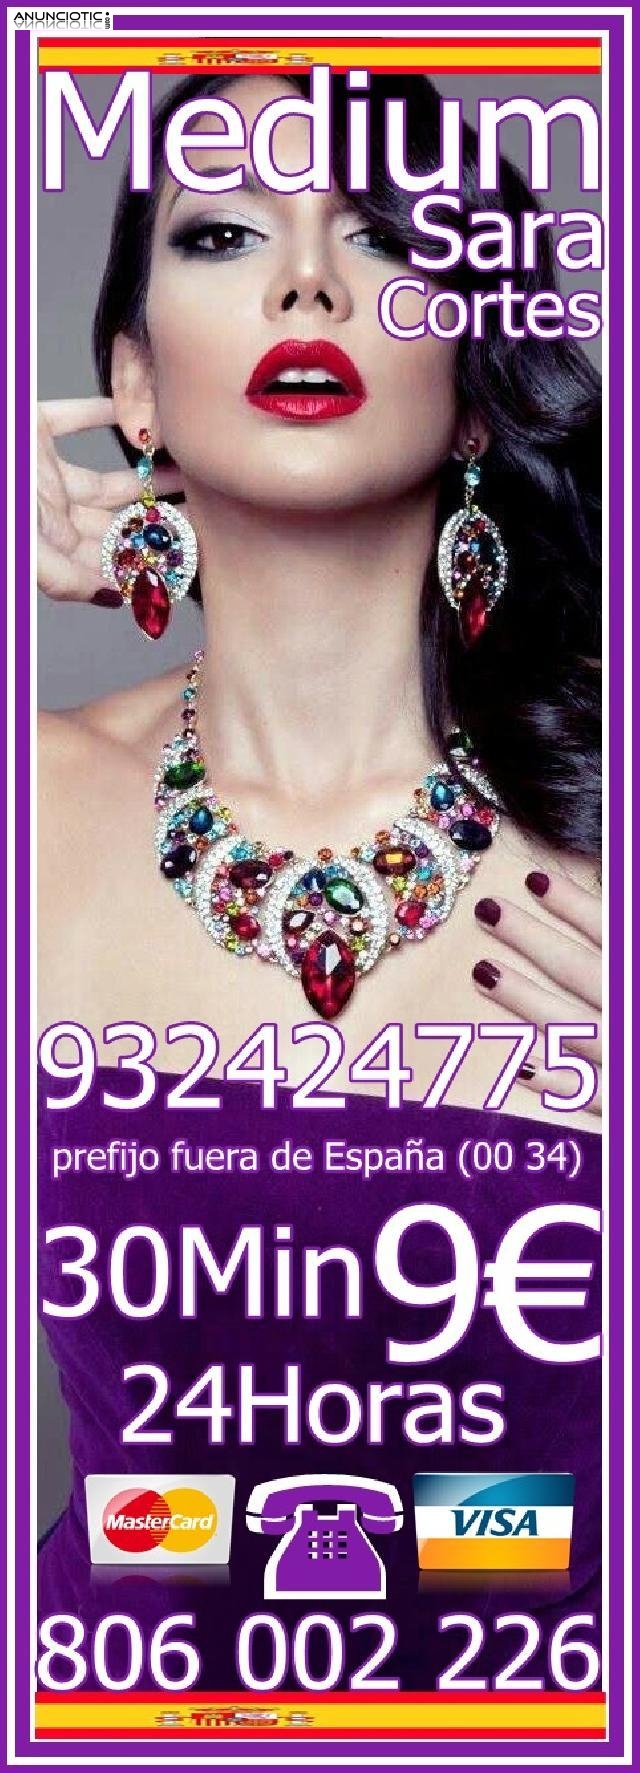  Videncia Sara Cortes Hechicera 932 424 775 desde 4 15mts, 7 20mts y 9 3